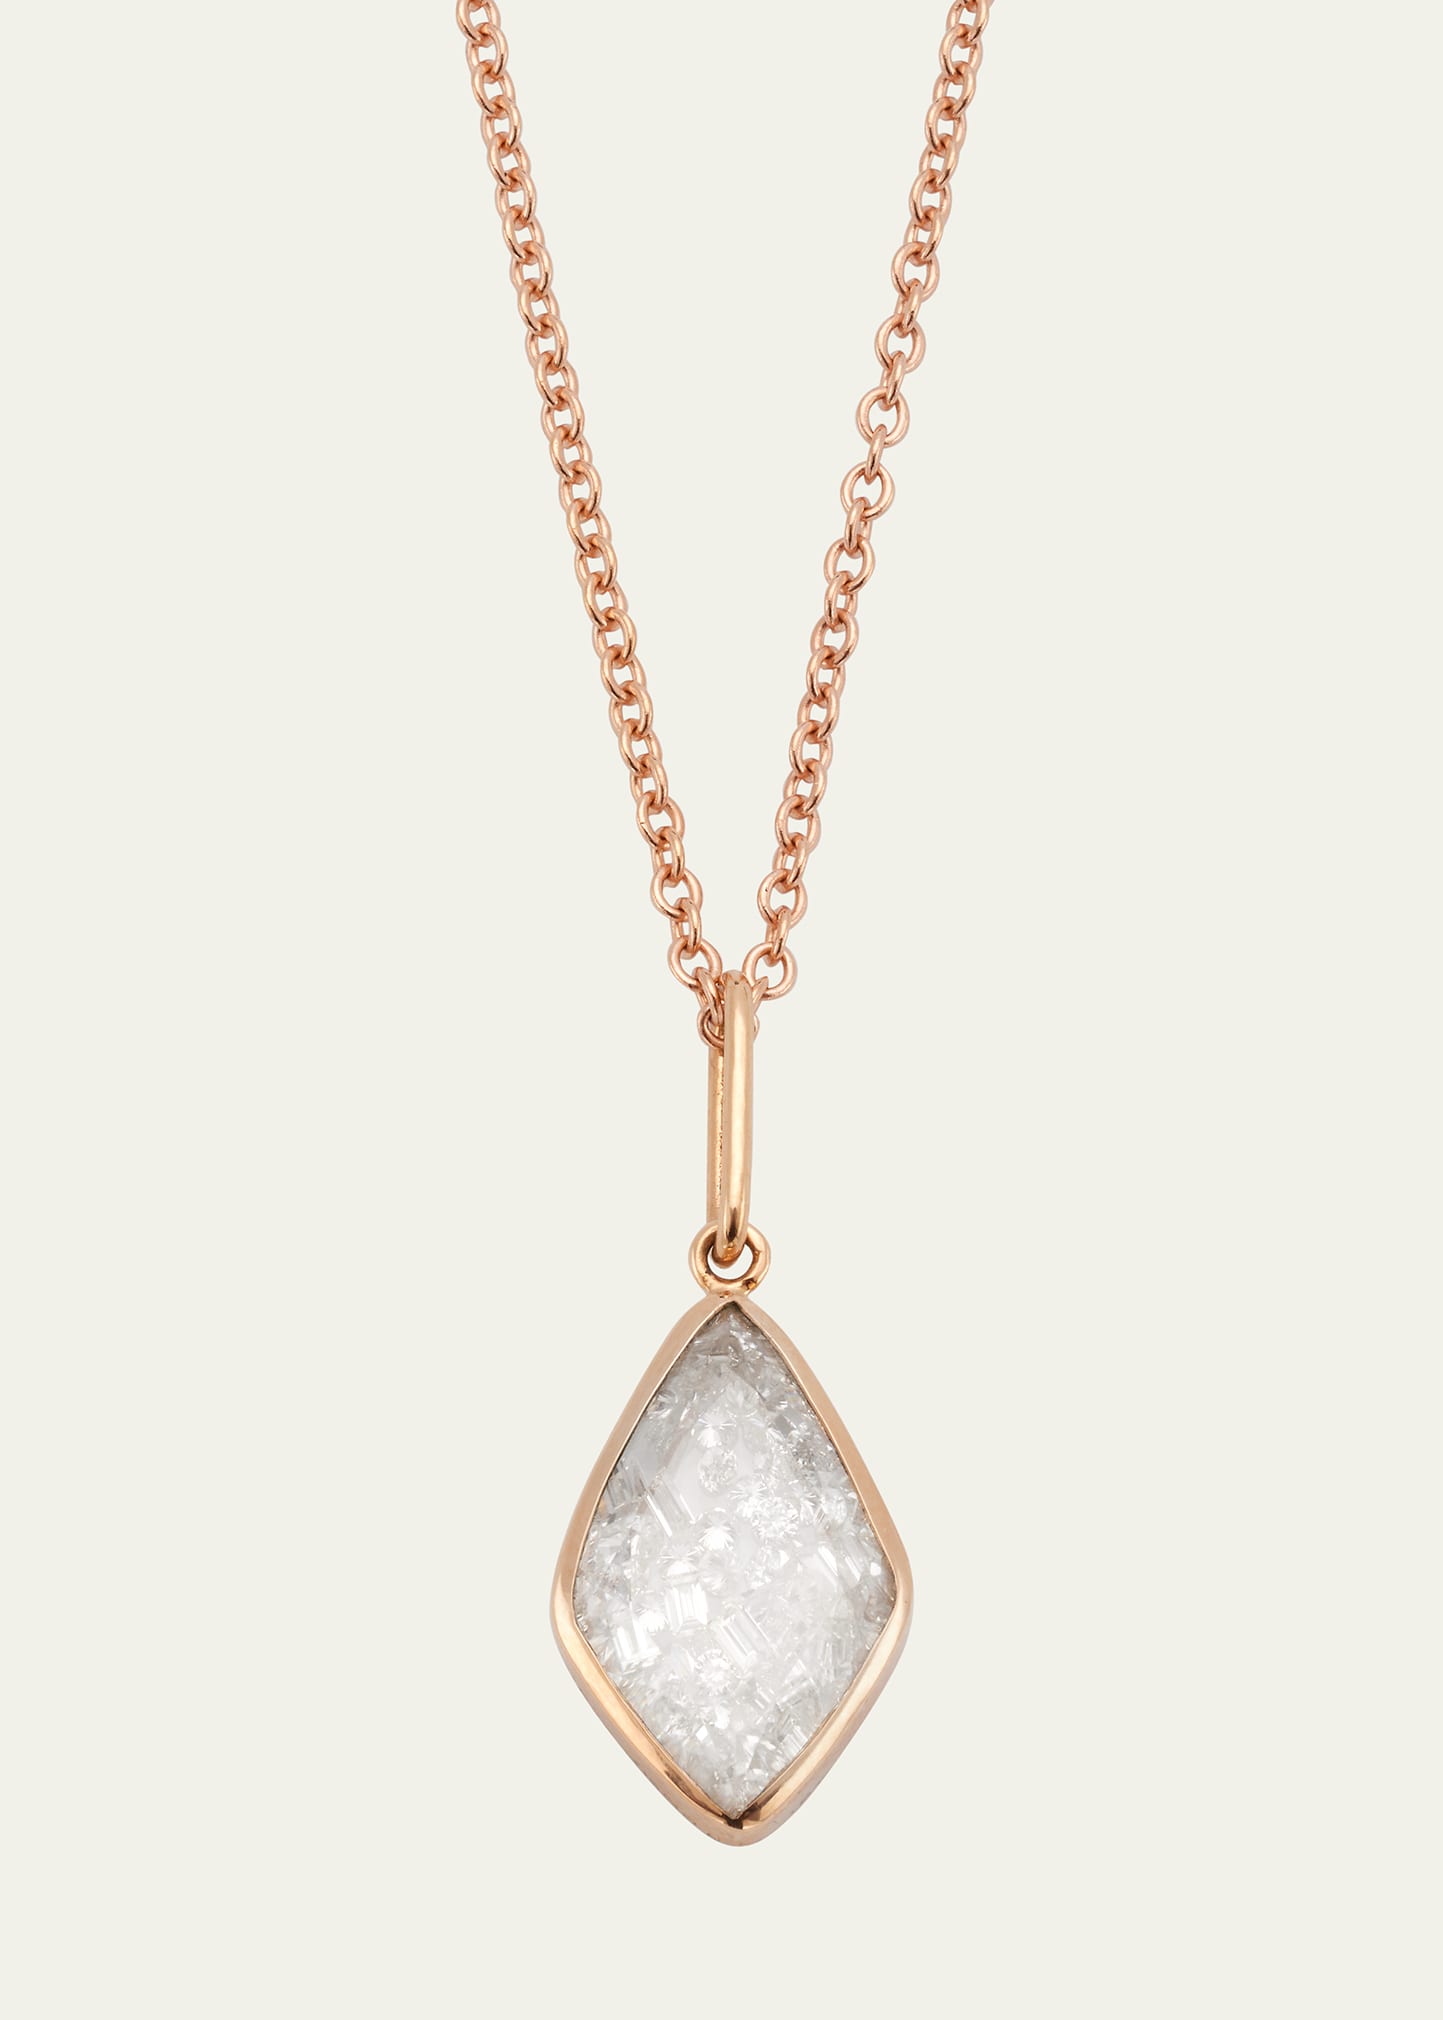 Baby Kite Diamond Pendant Necklace